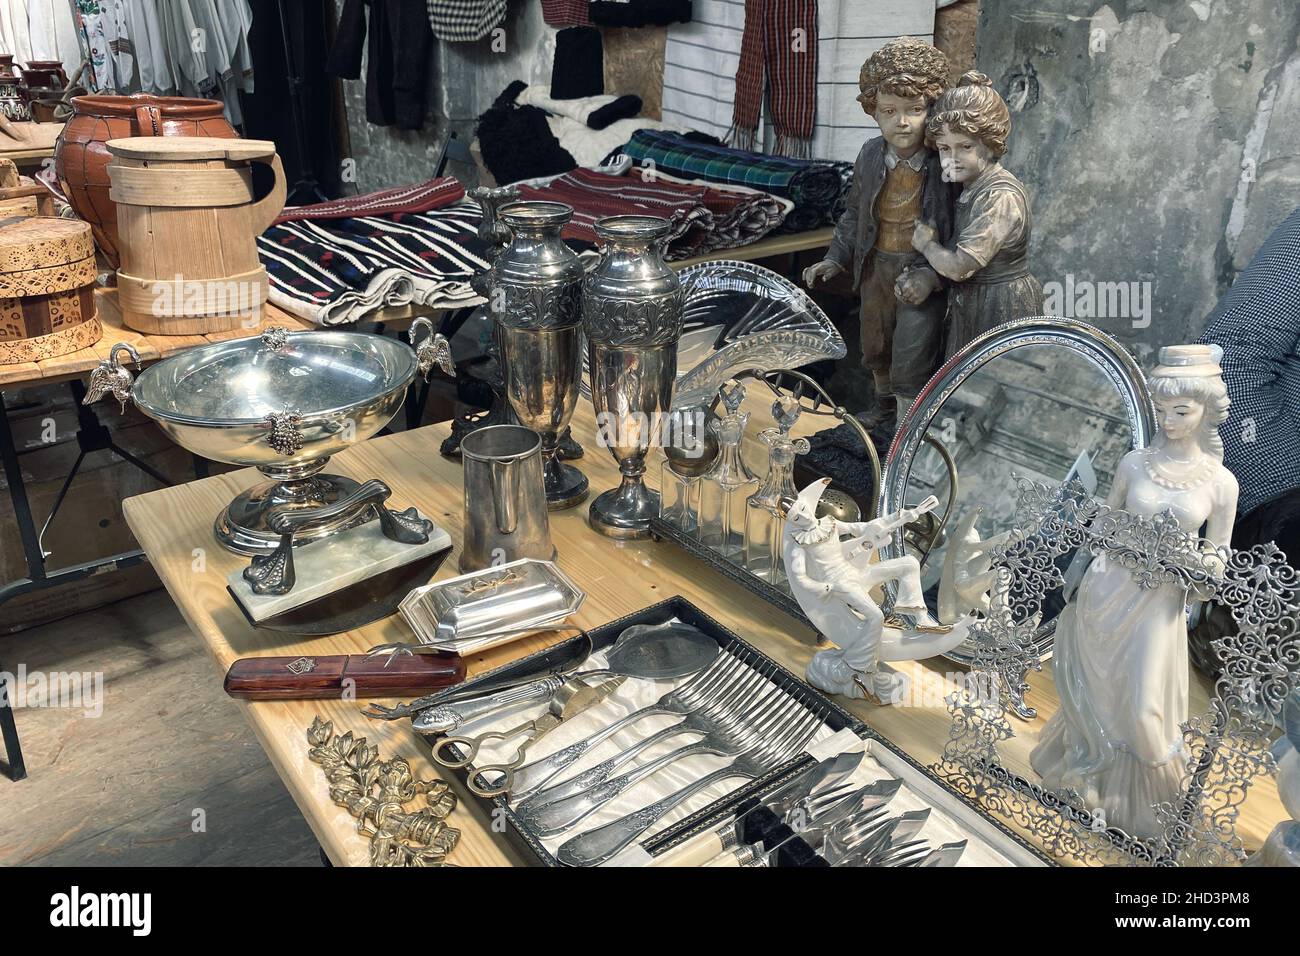 Lviv, Ucraina - 16 maggio 2021 : Antiquariato sul mercato delle pulci, vintage argenteria - cucchiai, coltelli, forchette e altre cose d'annata. Memorabi da collezione Foto Stock